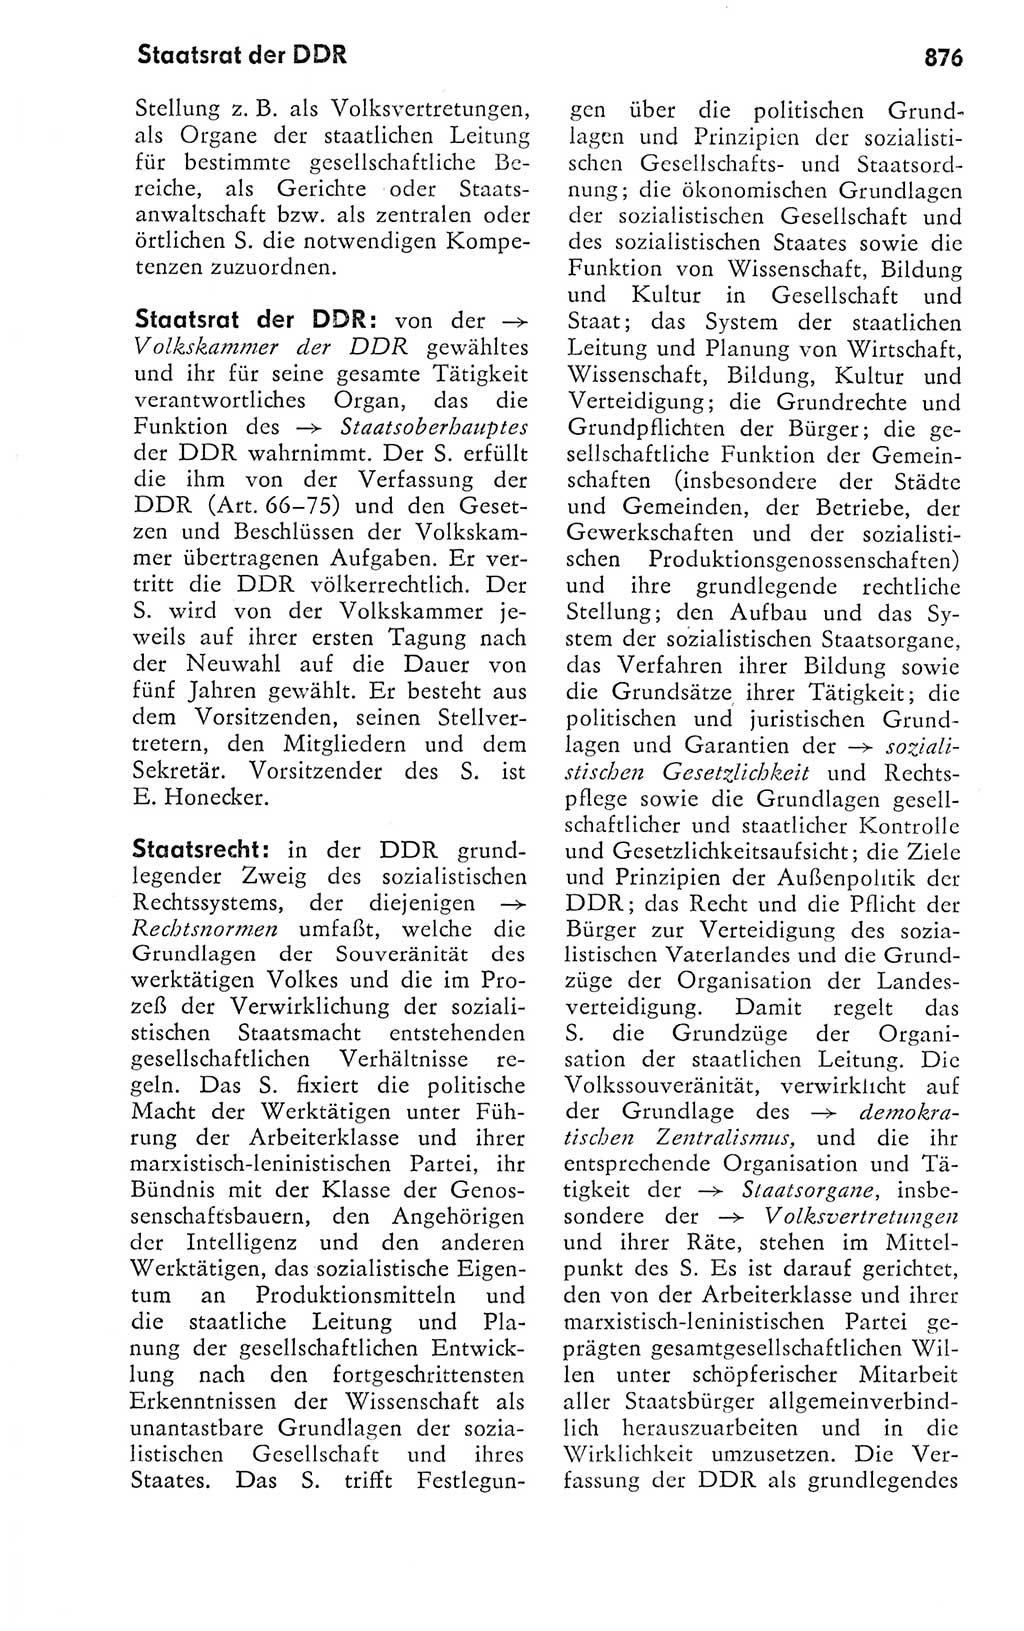 Kleines politisches Wörterbuch [Deutsche Demokratische Republik (DDR)] 1978, Seite 876 (Kl. pol. Wb. DDR 1978, S. 876)